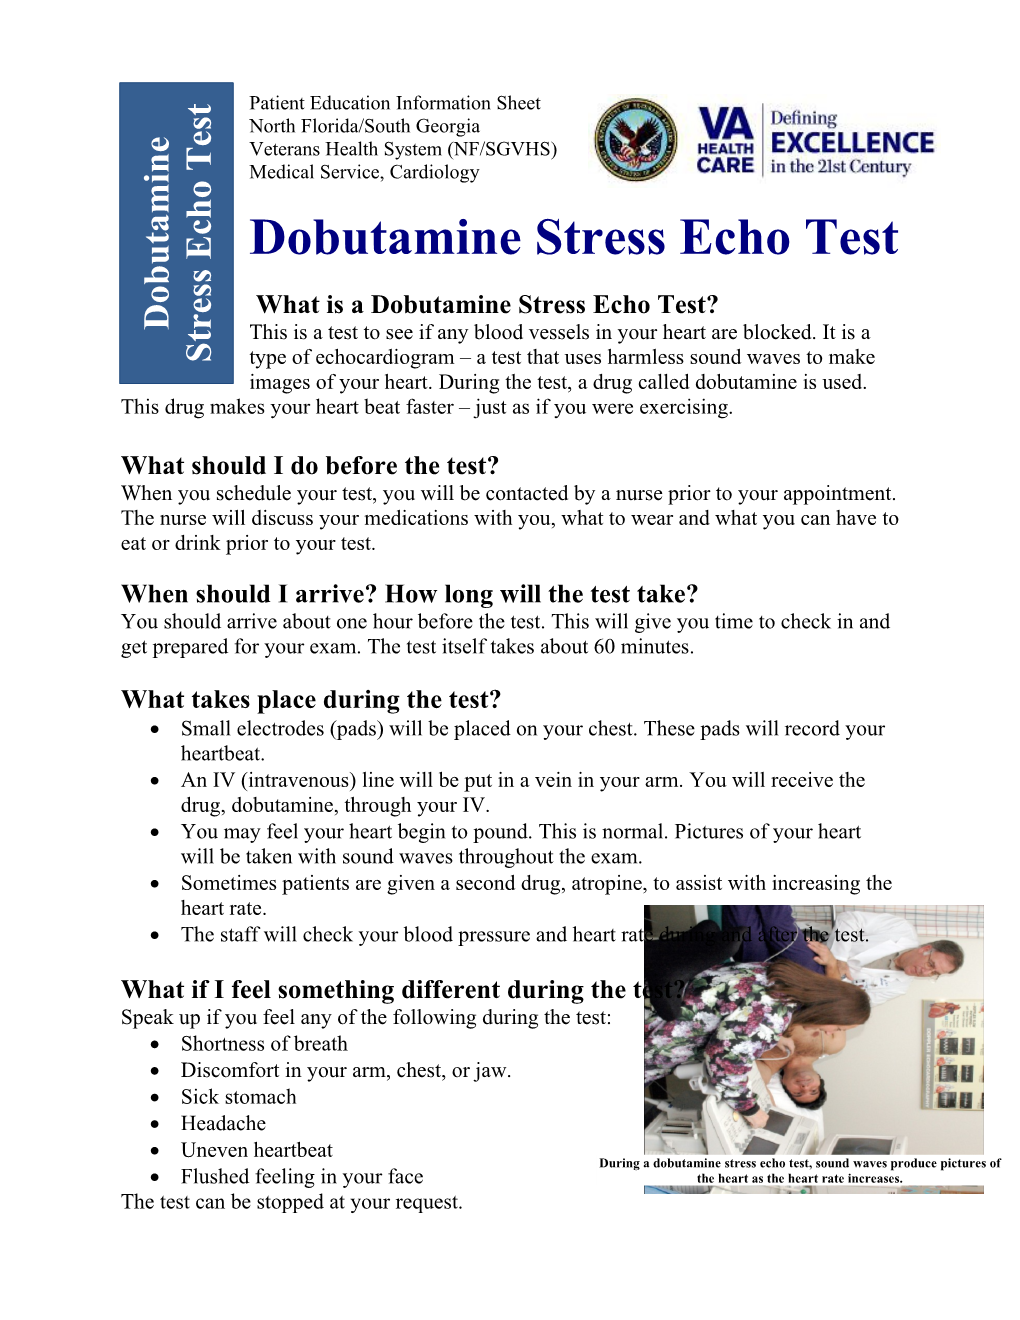 Dobutamine Stress Echo